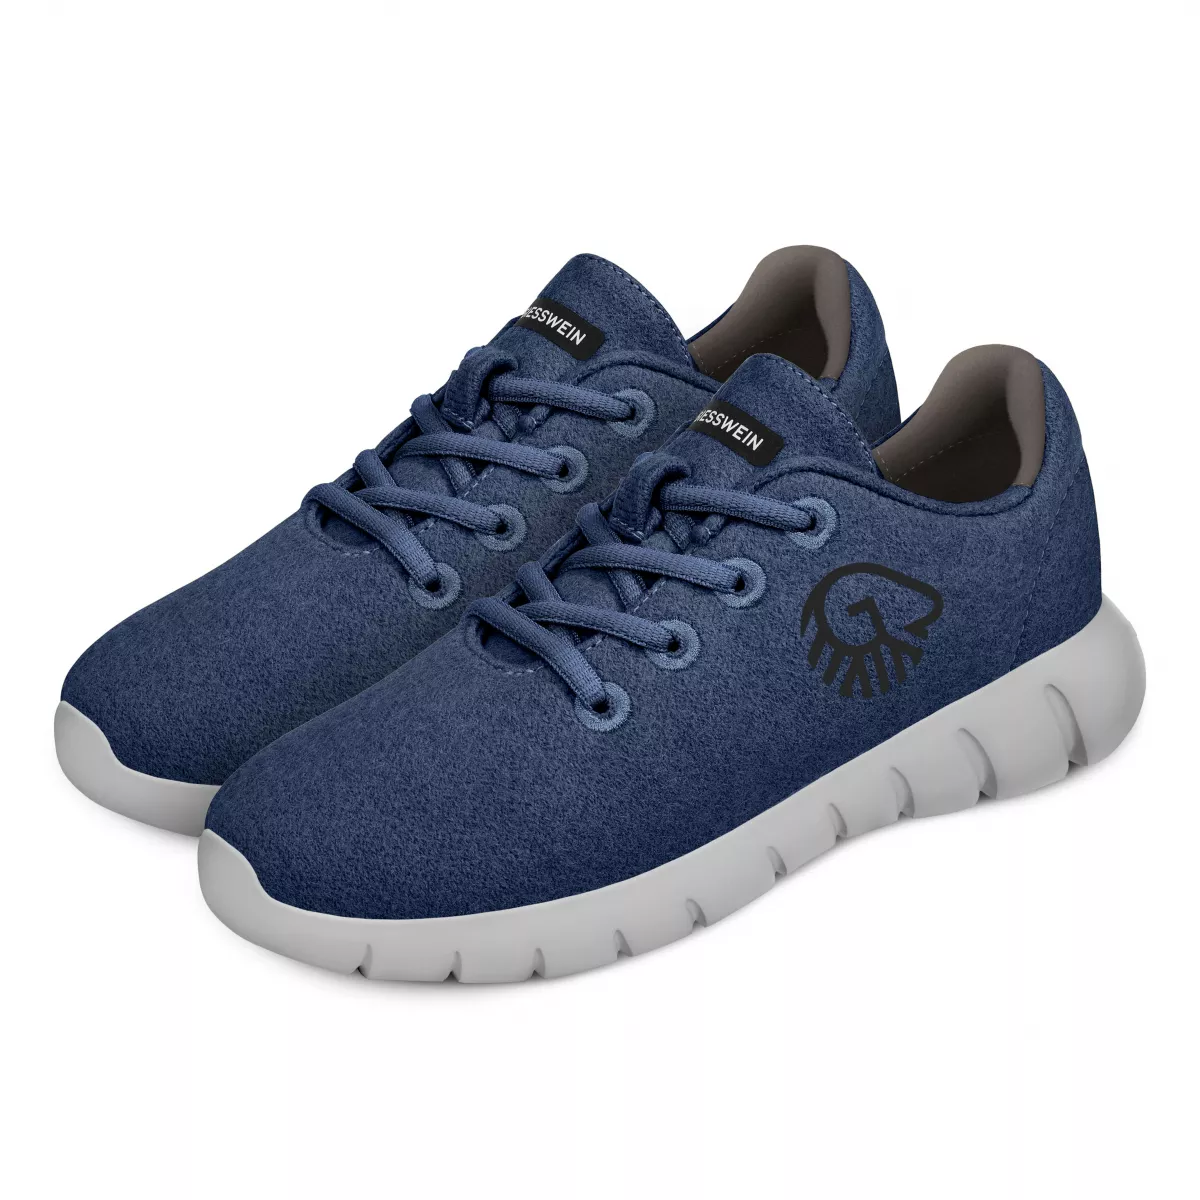 Pantofi barbati Merino Runners, ocean blue 43